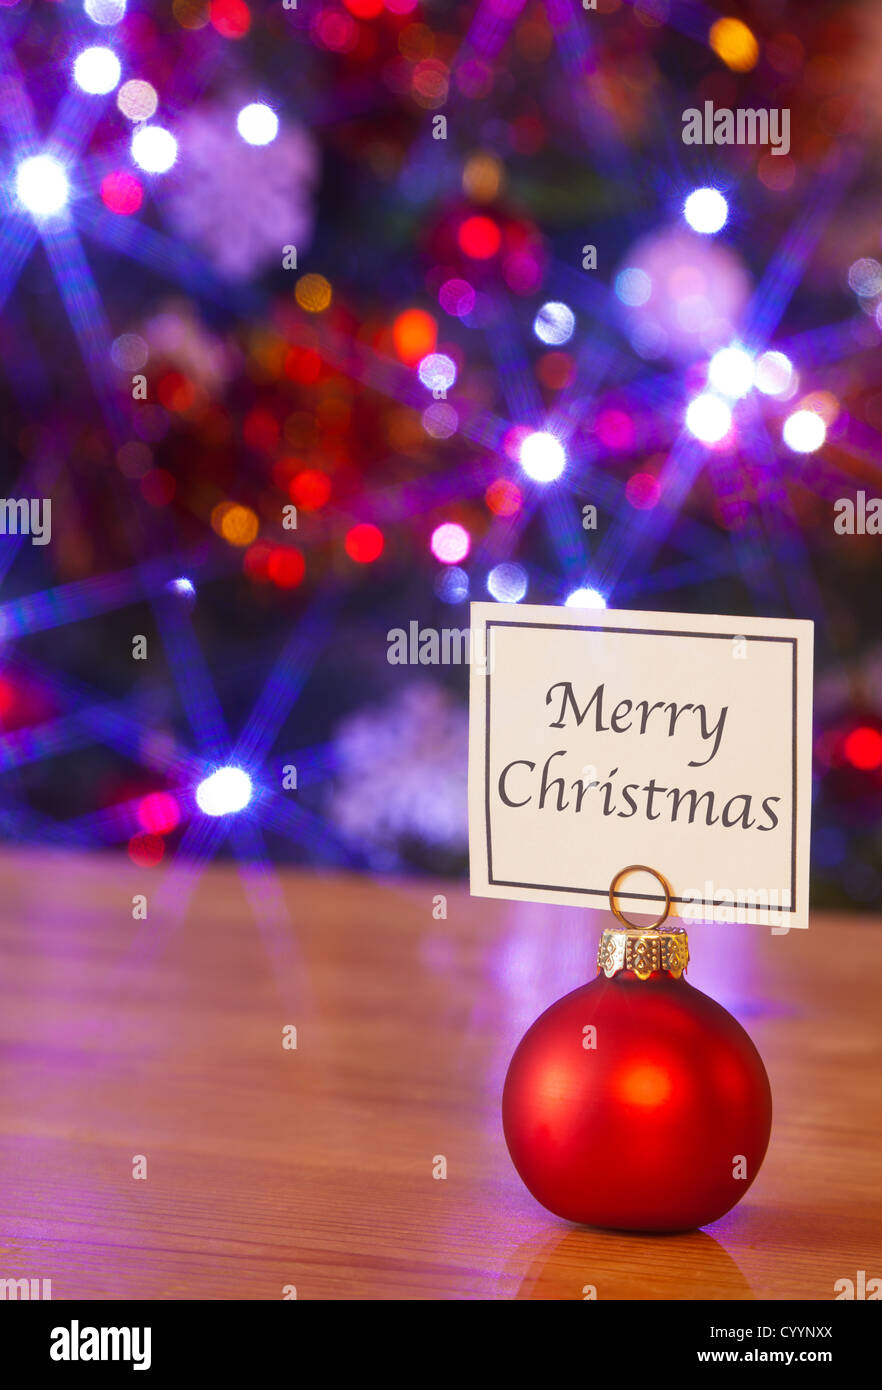 Eine Rote Christbaumkugel-Platzhalter mit einer Karte sagen Frohe  Weihnachten Lichterkette am Weihnachtsbaum hinter verwischt Stockfotografie  - Alamy